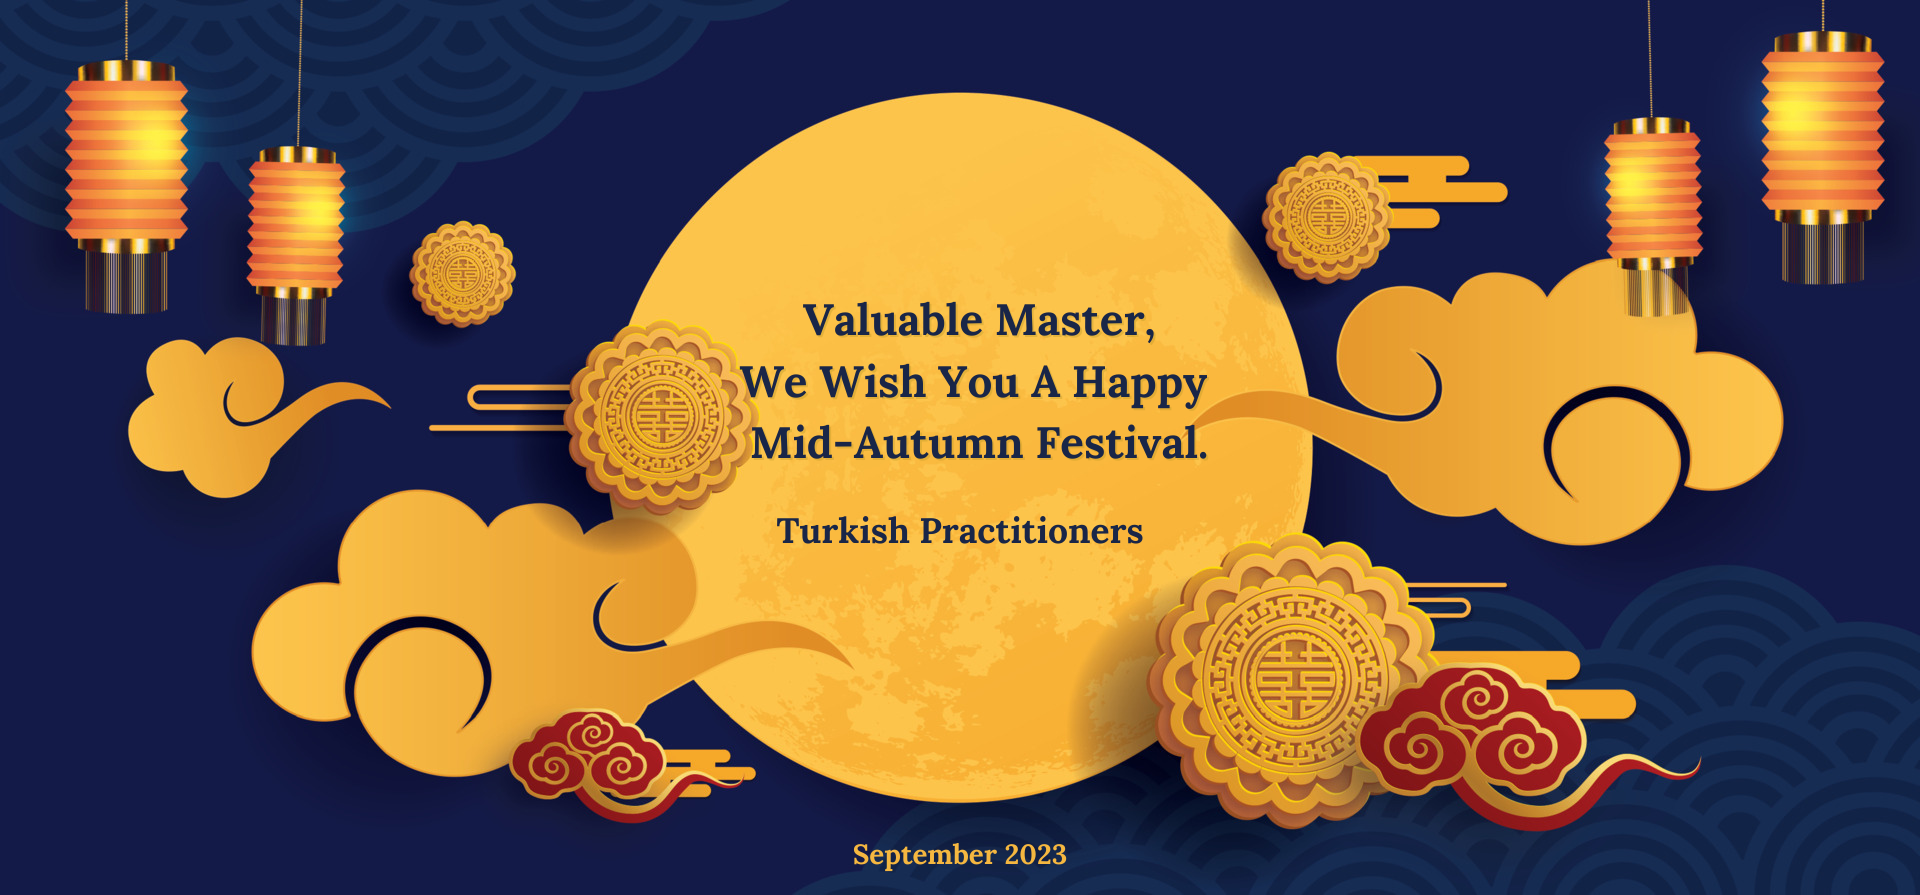 Image for article Türkiye'deki Uygulayıcılar Saygıdeğer Shifu Li'nin 2023 Sonbahar Ortası Festivalini Kutluyorlar!